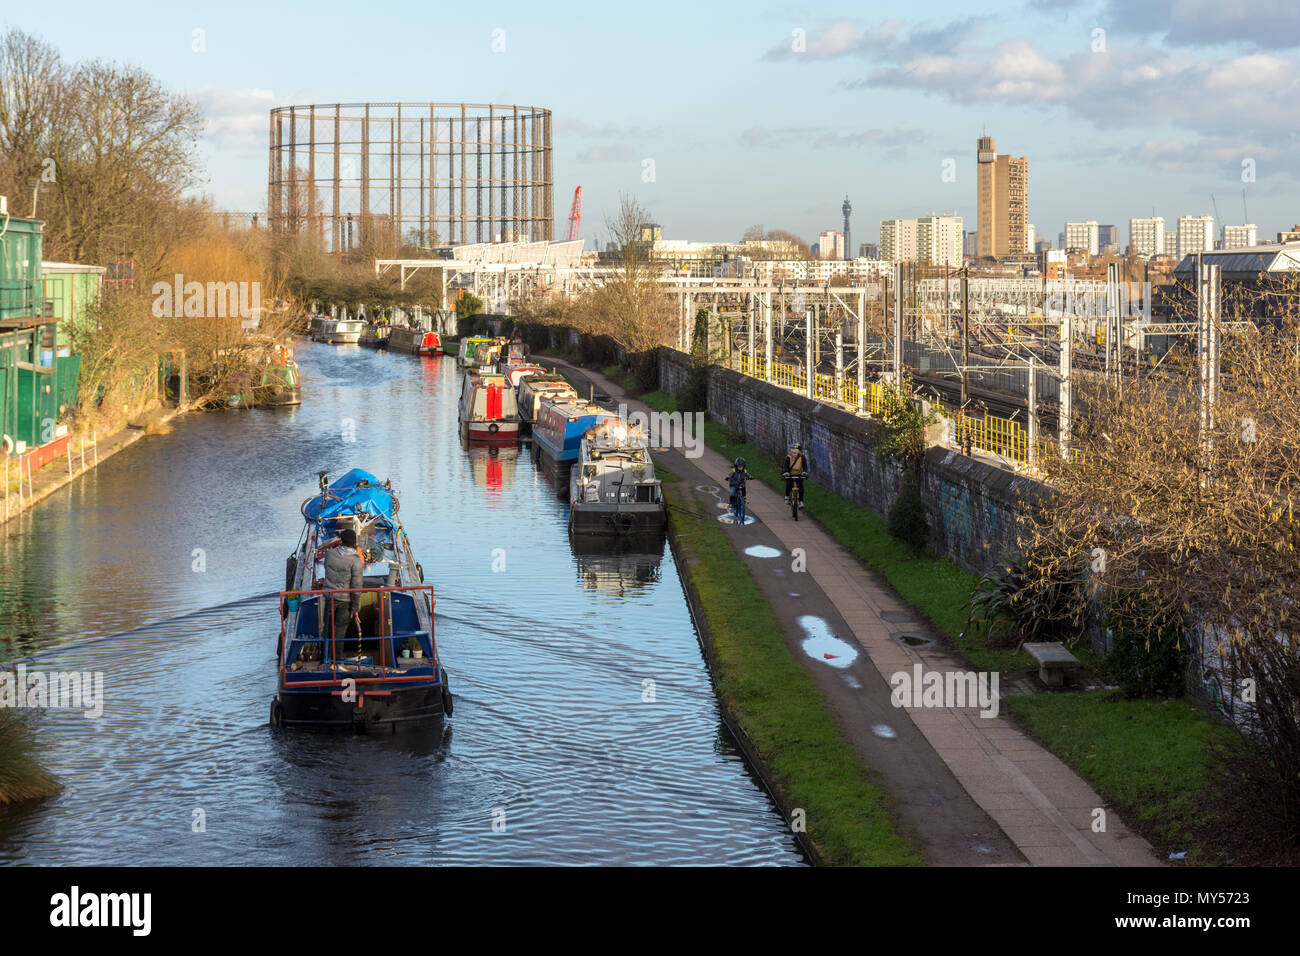 Londres, Inglaterra - 30 de enero de 2016: un tradicional narrowboat navegando el Grand Union Canal en Old Oak Common, un distrito industrial y las principales rede Foto de stock